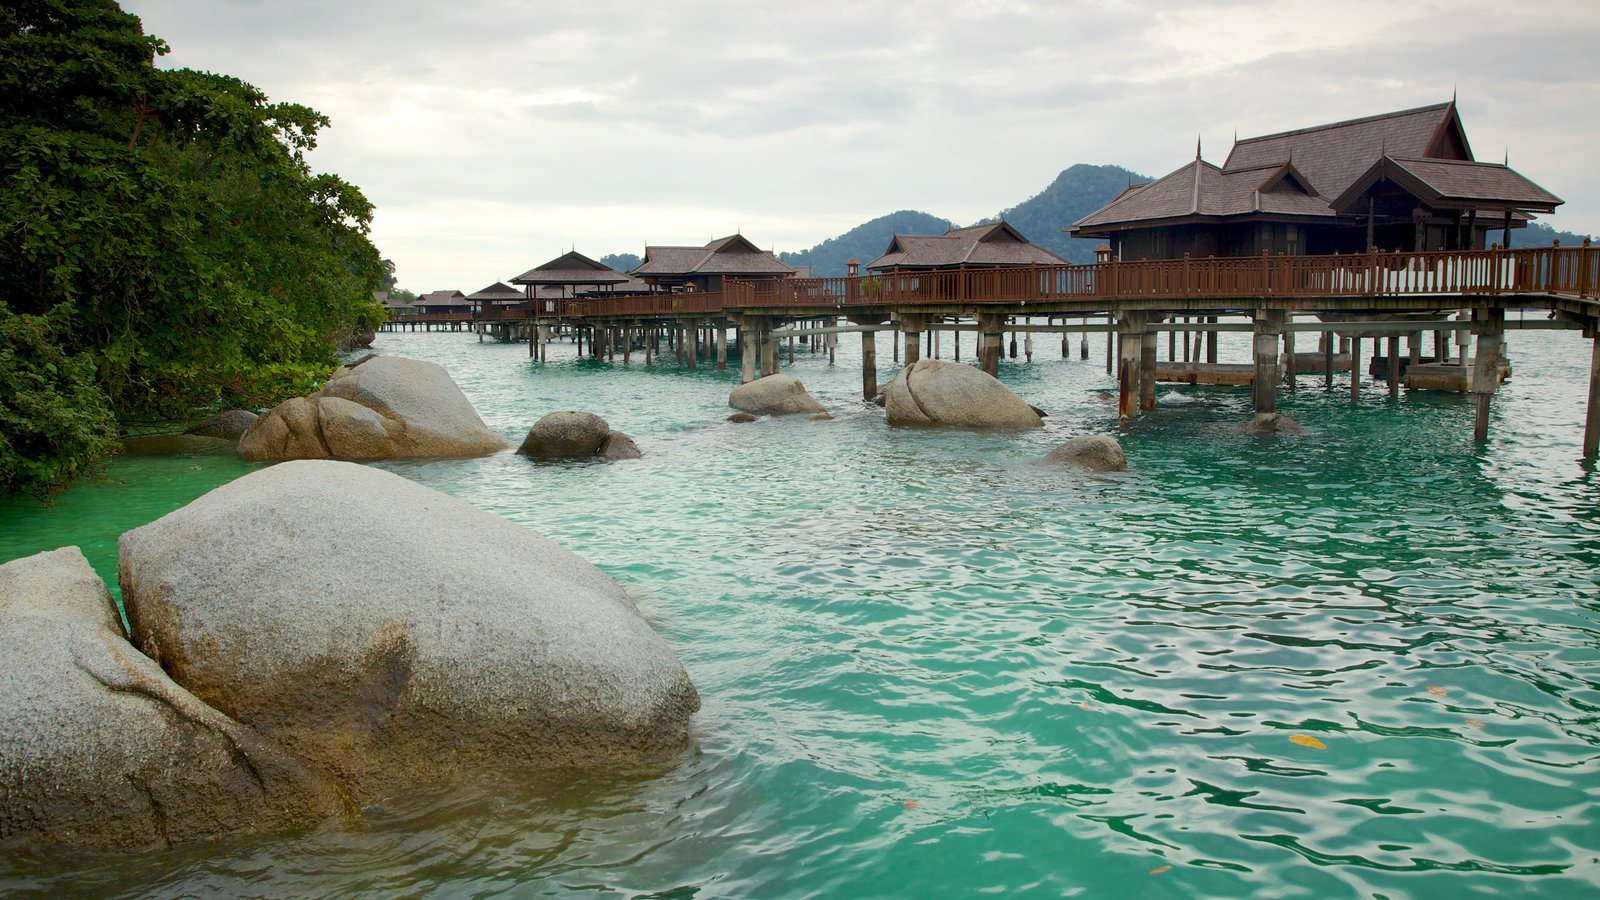 Pangkor Laut - Malaysia's Best Islands - Suma - Explore Asia